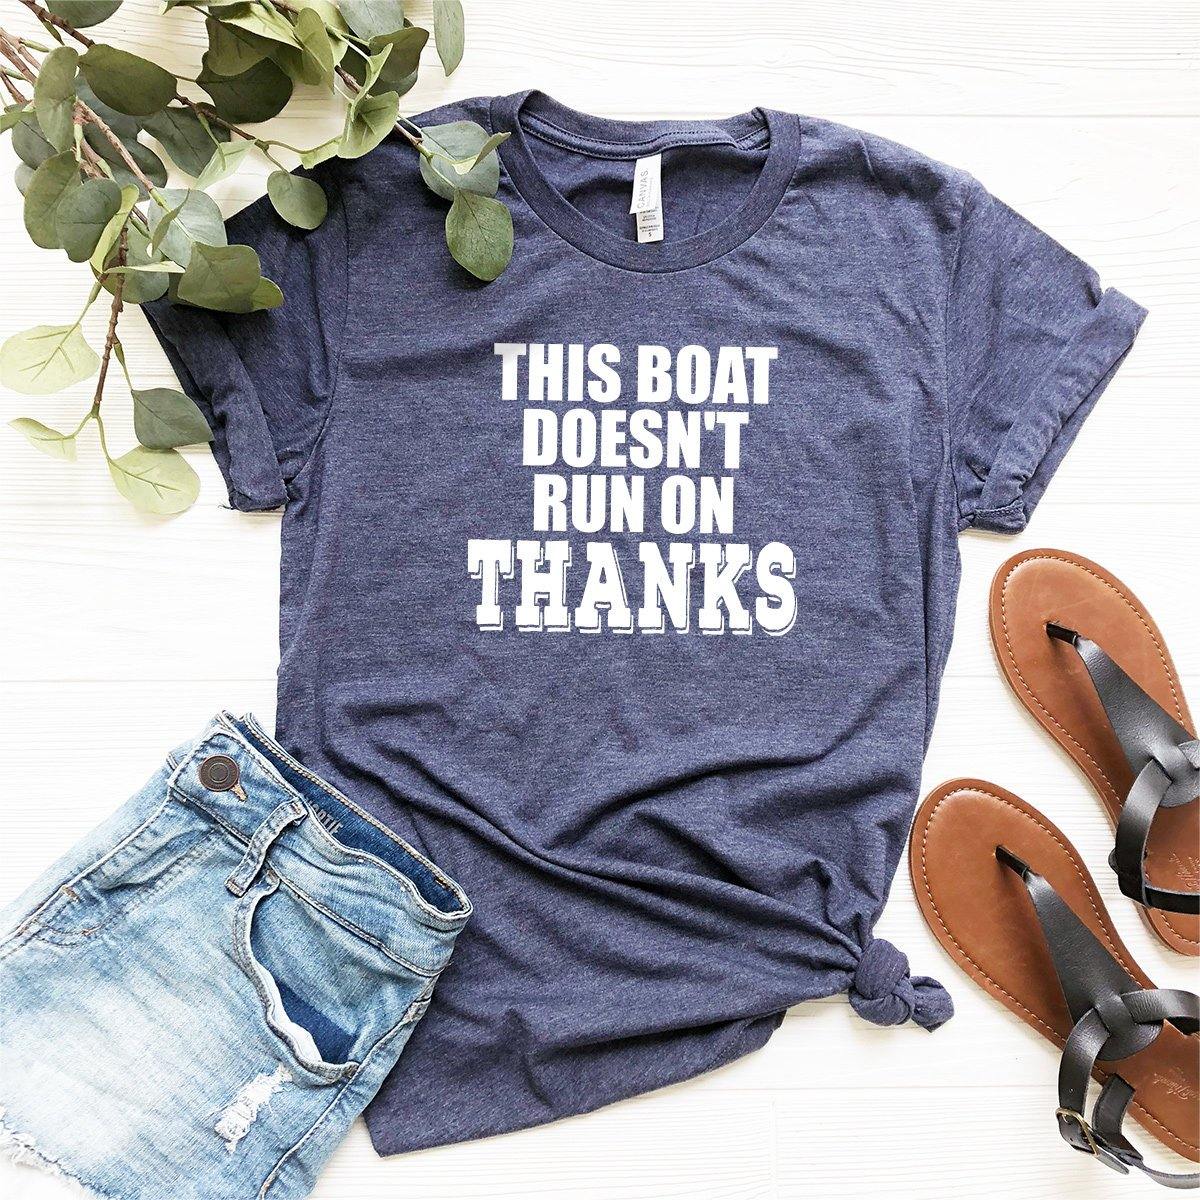 Boating Shirt,Funny Boating Shirt,Sailing Shirt,Boat Owner,Lake Gift,My Boat Doesn't Run Shirt,Lake Shirt,Boat Gift,Boating Gift,Lake Shirt